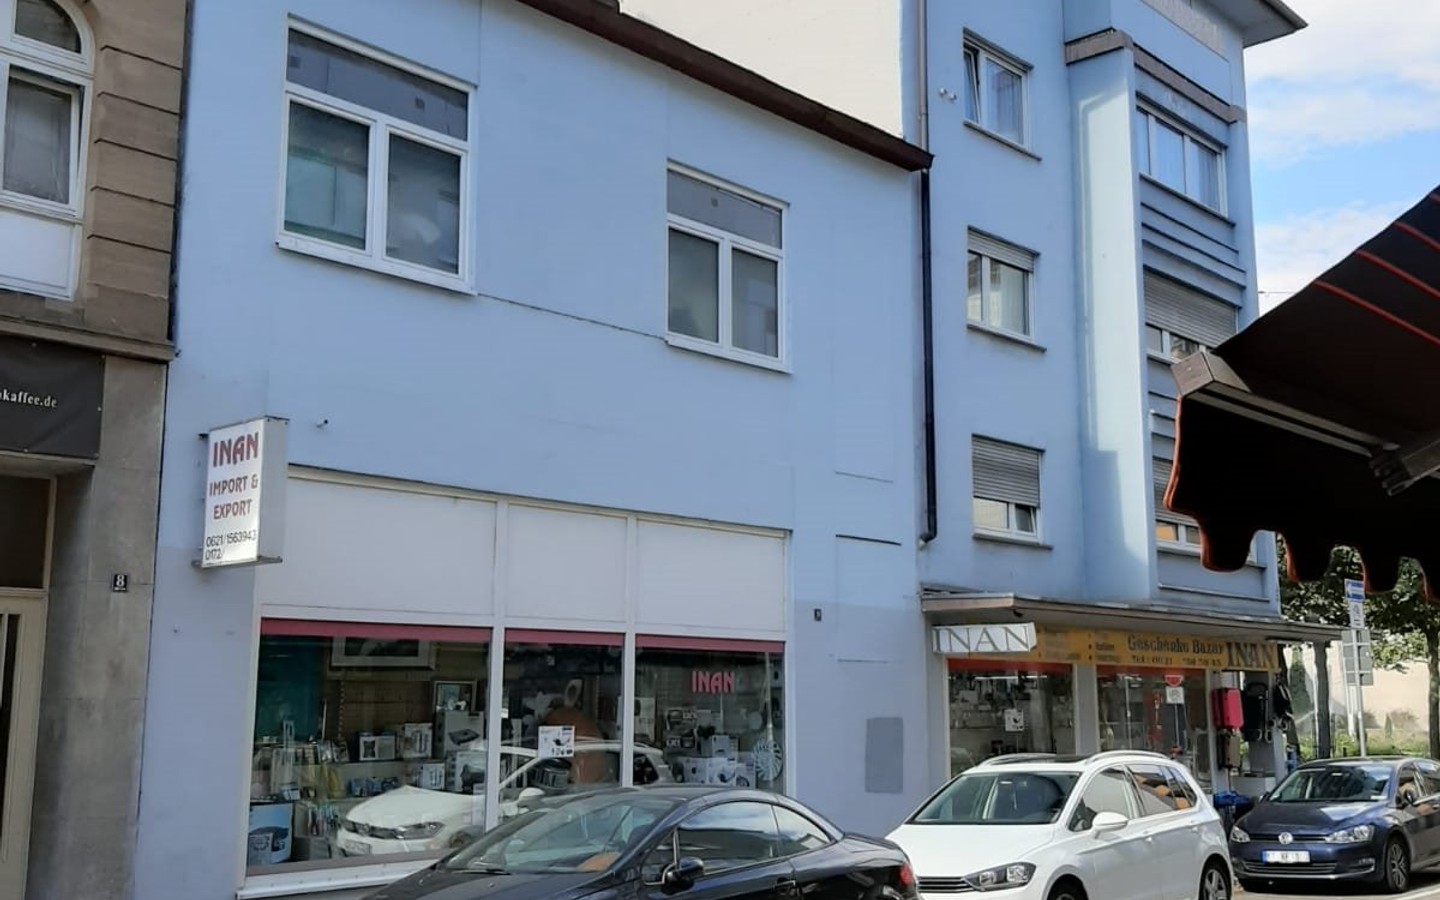 Gebäude F2, 9 - Wohn- und Geschäftshaus mit Entwicklungspotential in Mannheim Innenstadtlage (F2, 9 und 9A)